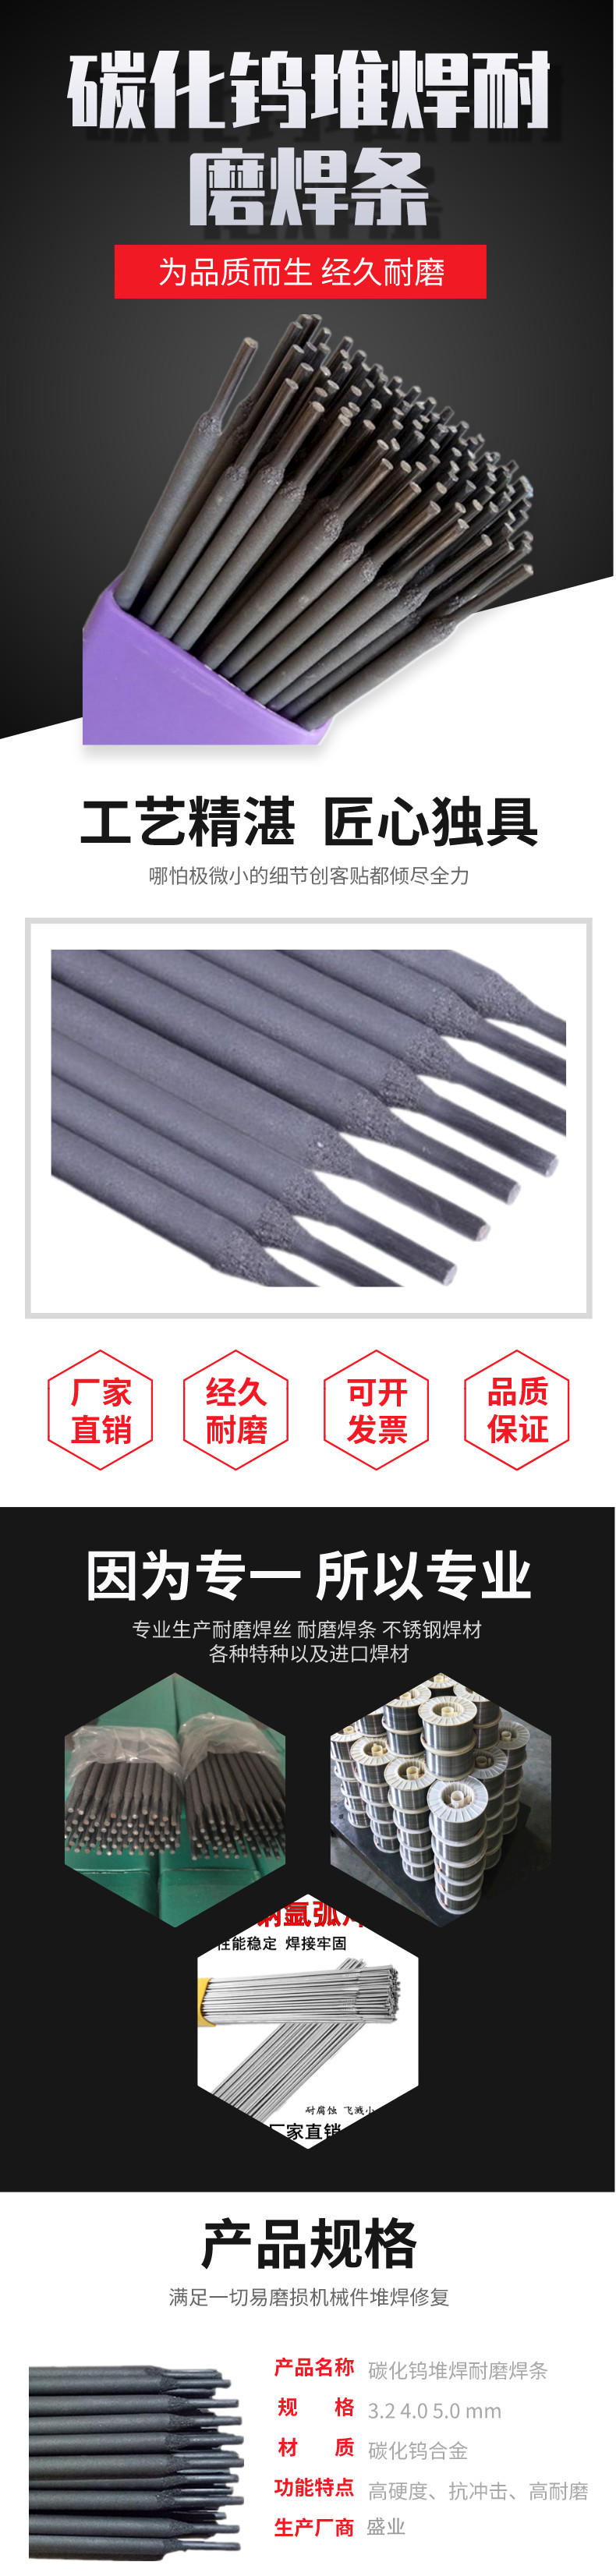 重庆D507高铬钢堆焊焊条 EDCr-A1-15耐磨堆焊焊条示例图3